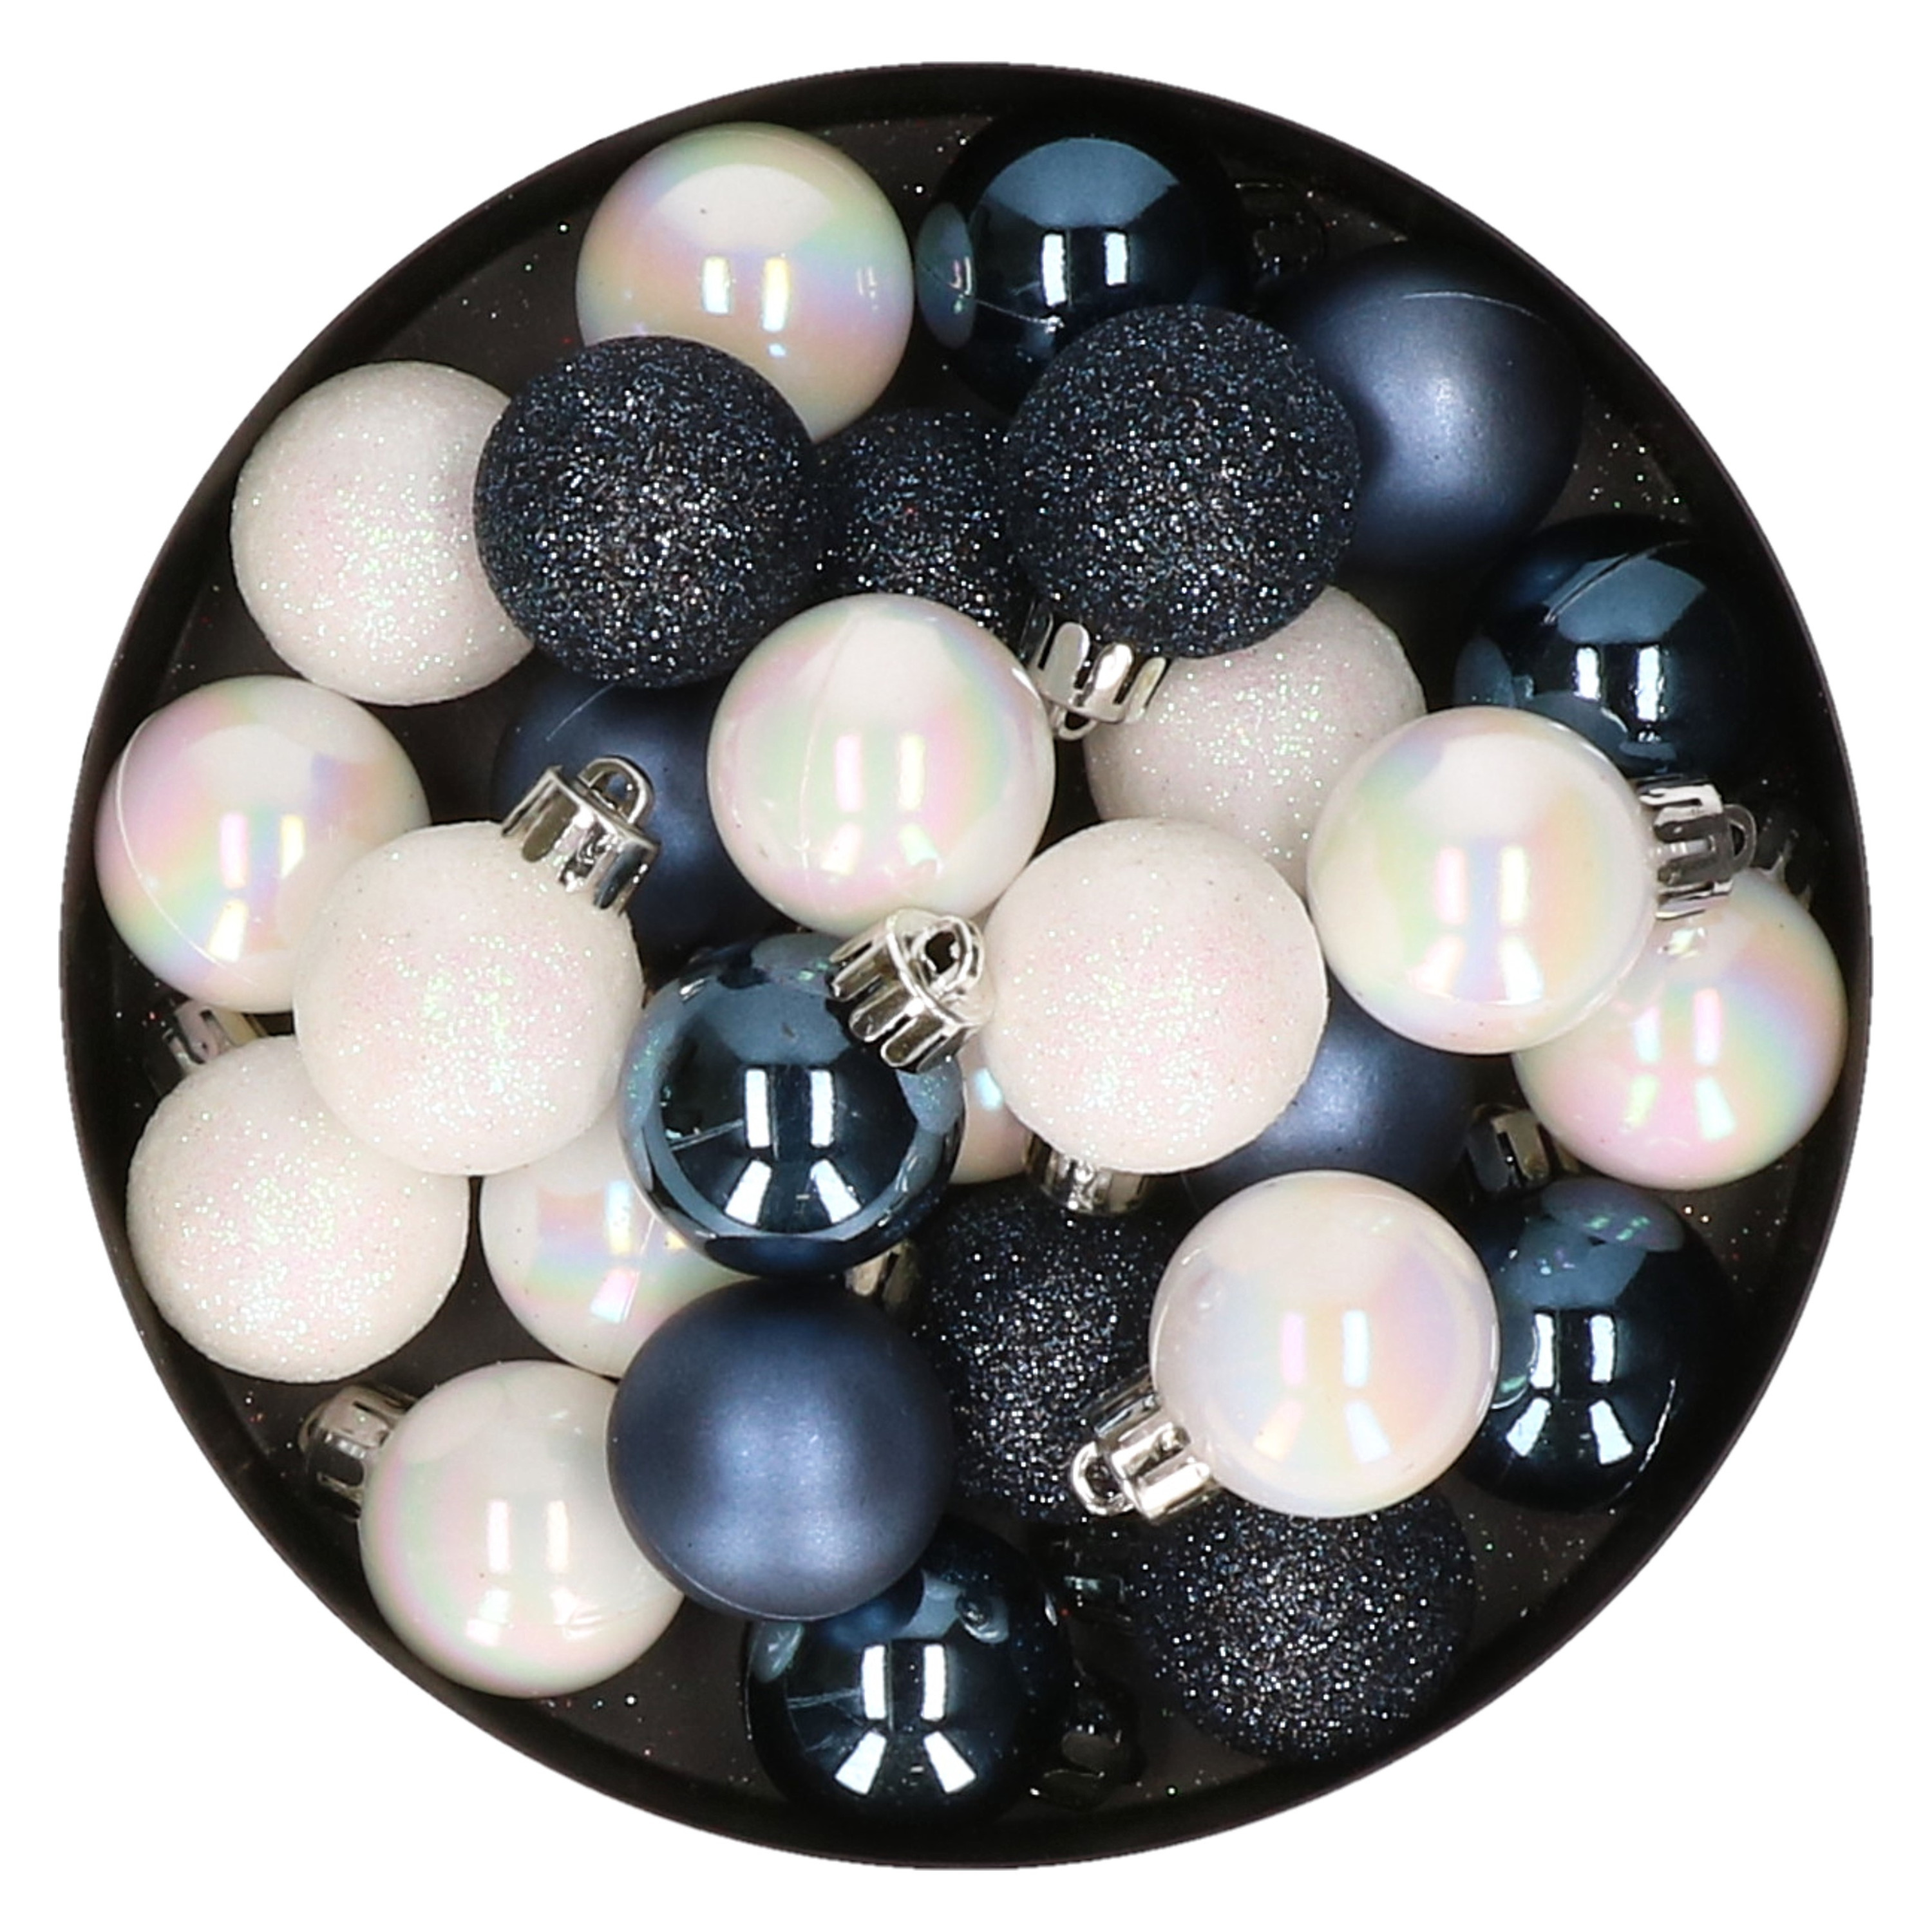 28x stuks kunststof kerstballen parelmoer wit en donkerblauw mix 3 cm